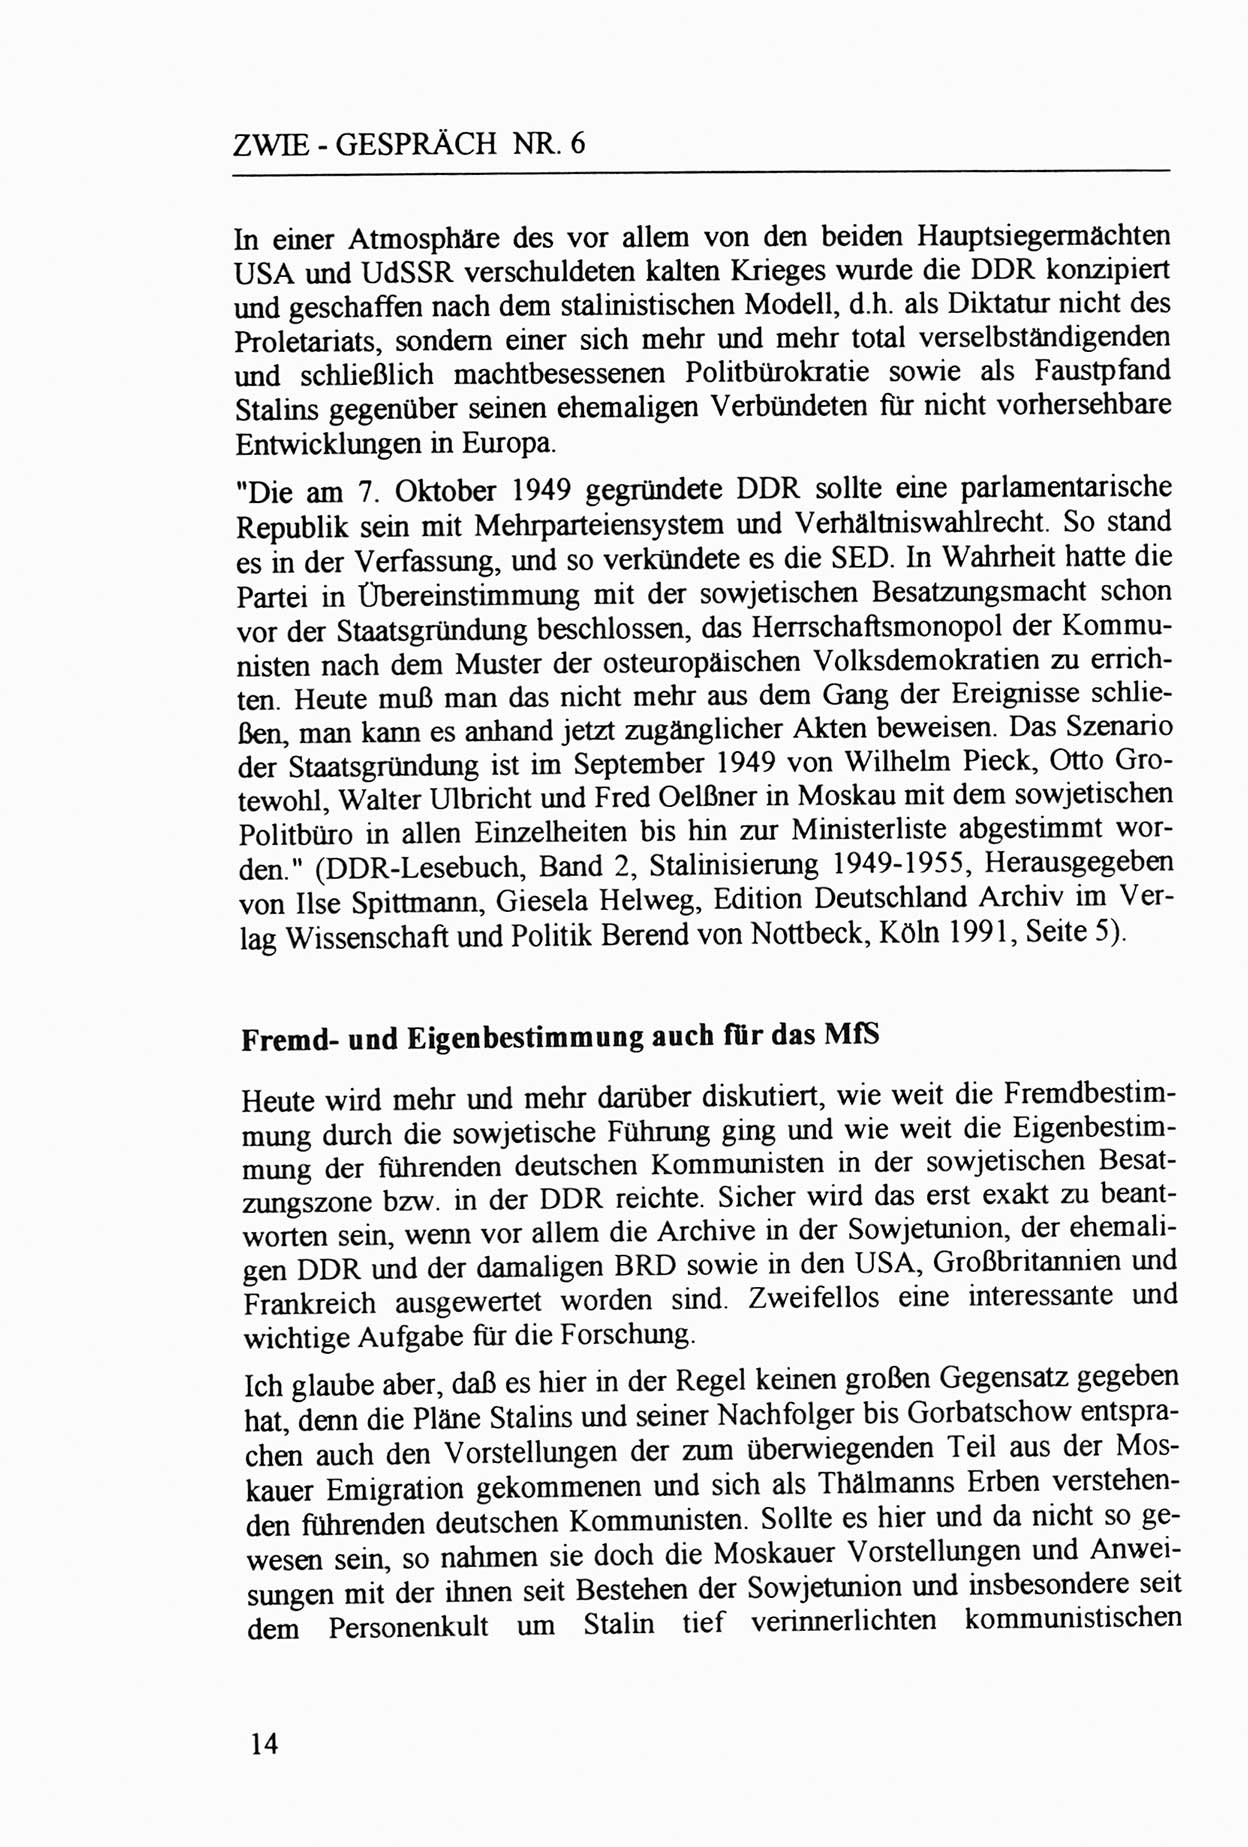 Zwie-Gespräch, Beiträge zur Aufarbeitung der Staatssicherheits-Vergangenheit [Deutsche Demokratische Republik (DDR)], Ausgabe Nr. 6, Berlin 1992, Seite 14 (Zwie-Gespr. Ausg. 6 1992, S. 14)